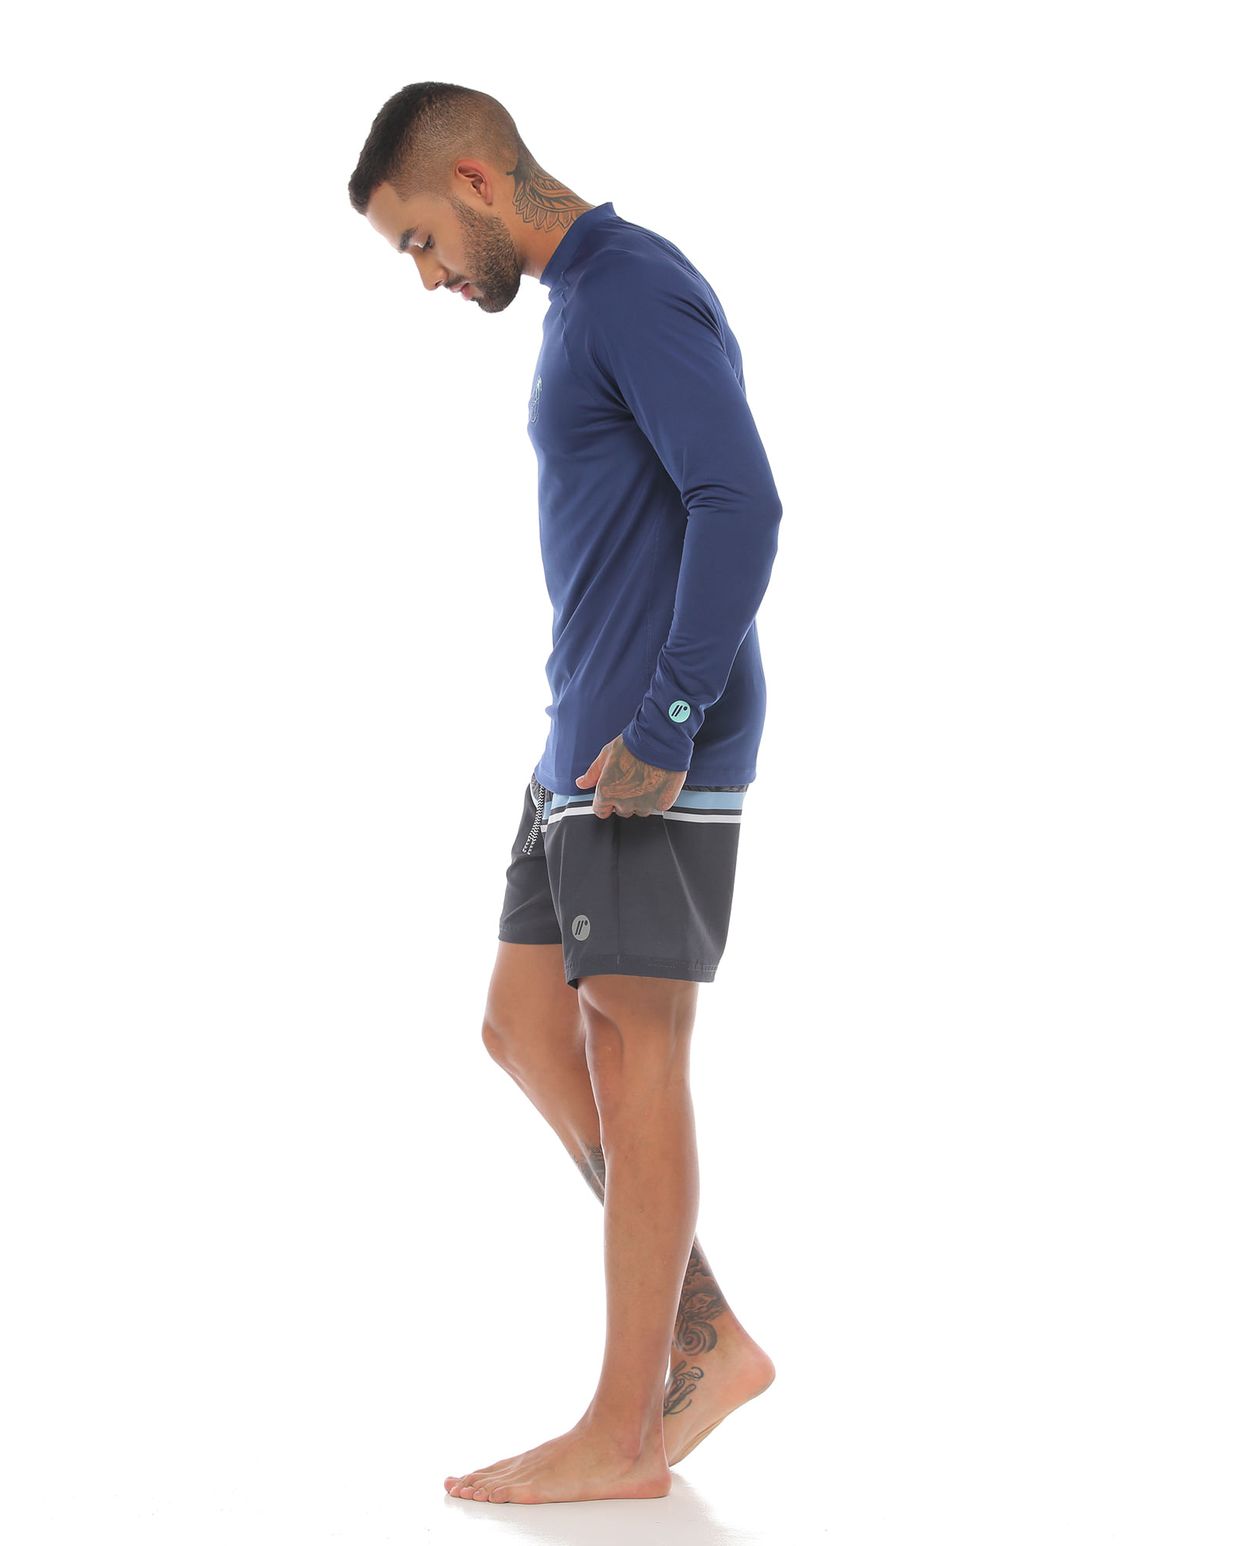 modelo con camibuso proteccion uv color azul oscuro y pantaloneta de playa color gris para hombre cuerpo completo parte lateral derecha